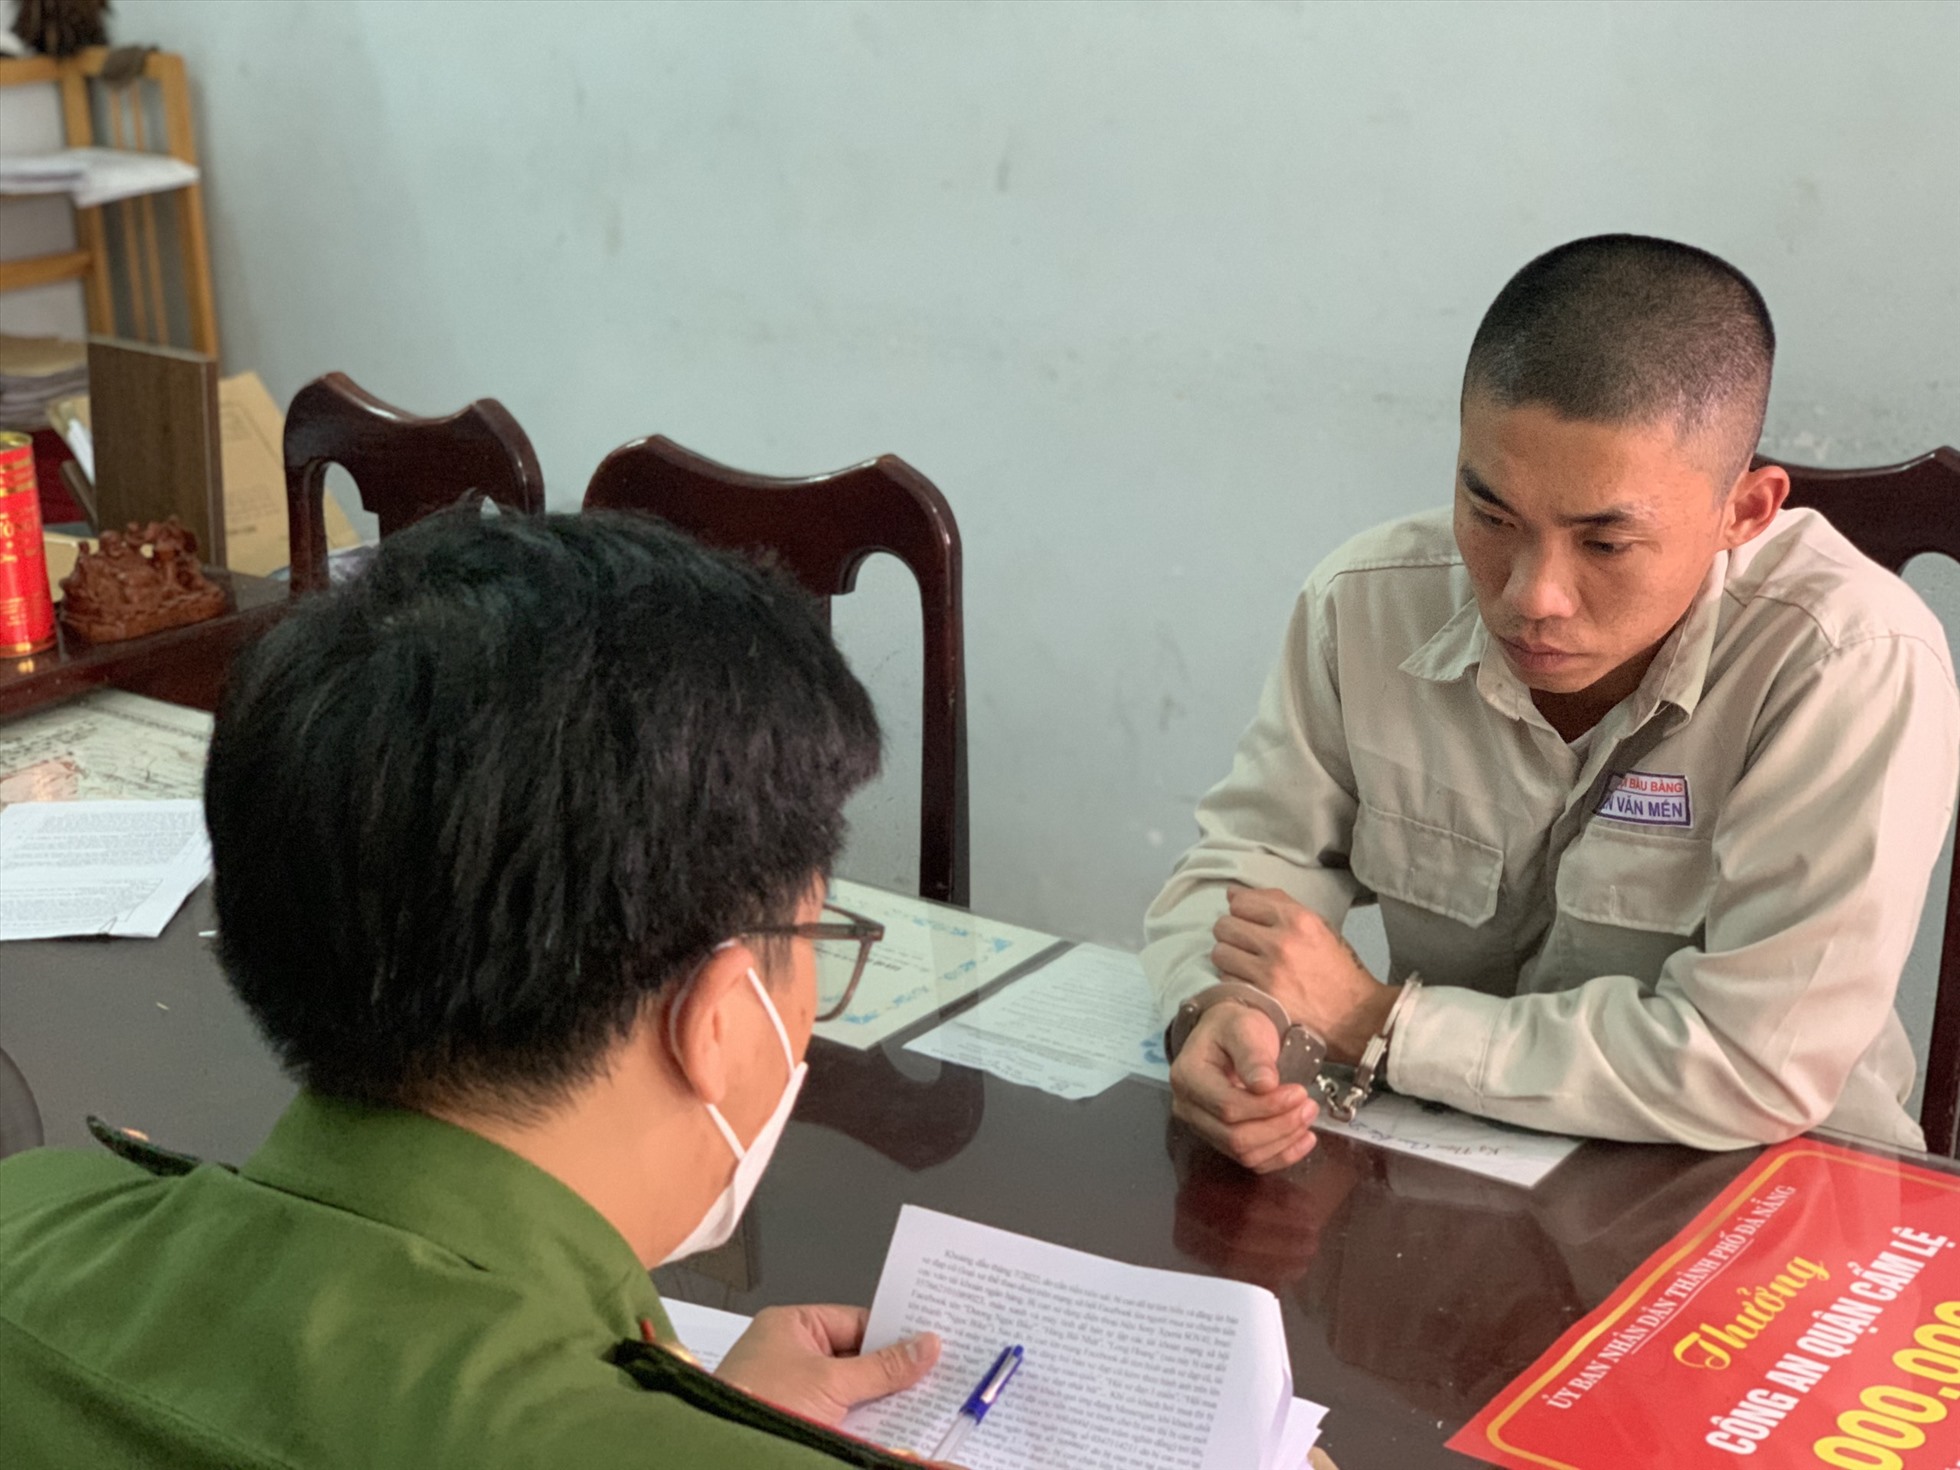 Nguyễn Văn Mế khai nhận tại cơ quan công an. Ảnh: Công an cung cấp